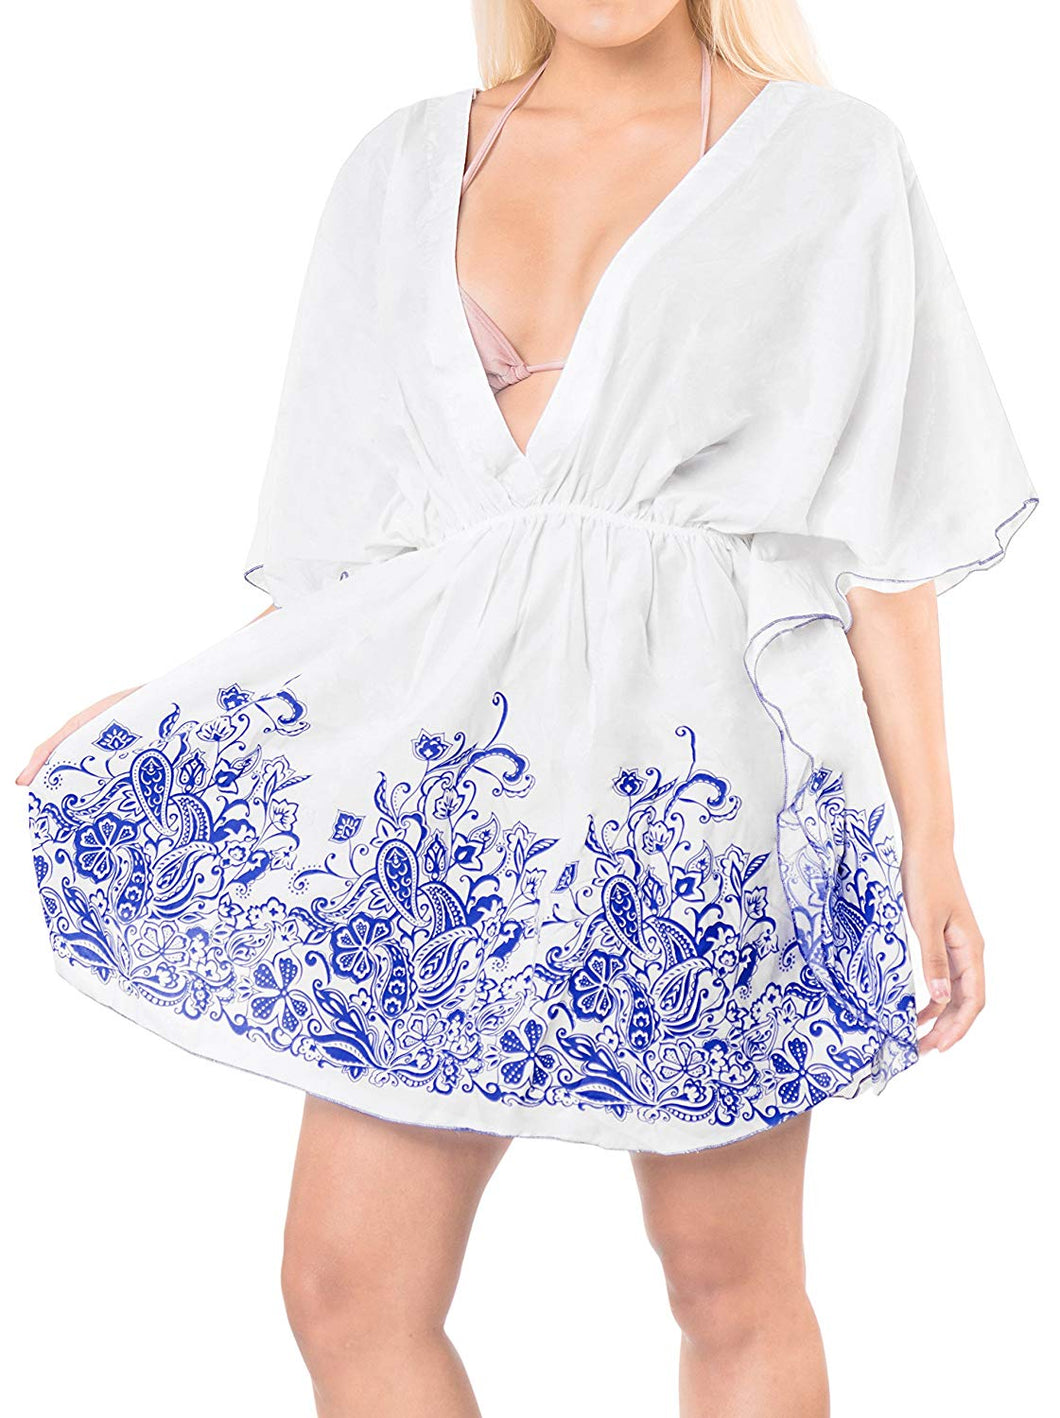 la-leela-swimsuit-beach-wear-embroidery-bikini-cover-up-women-summer-dress